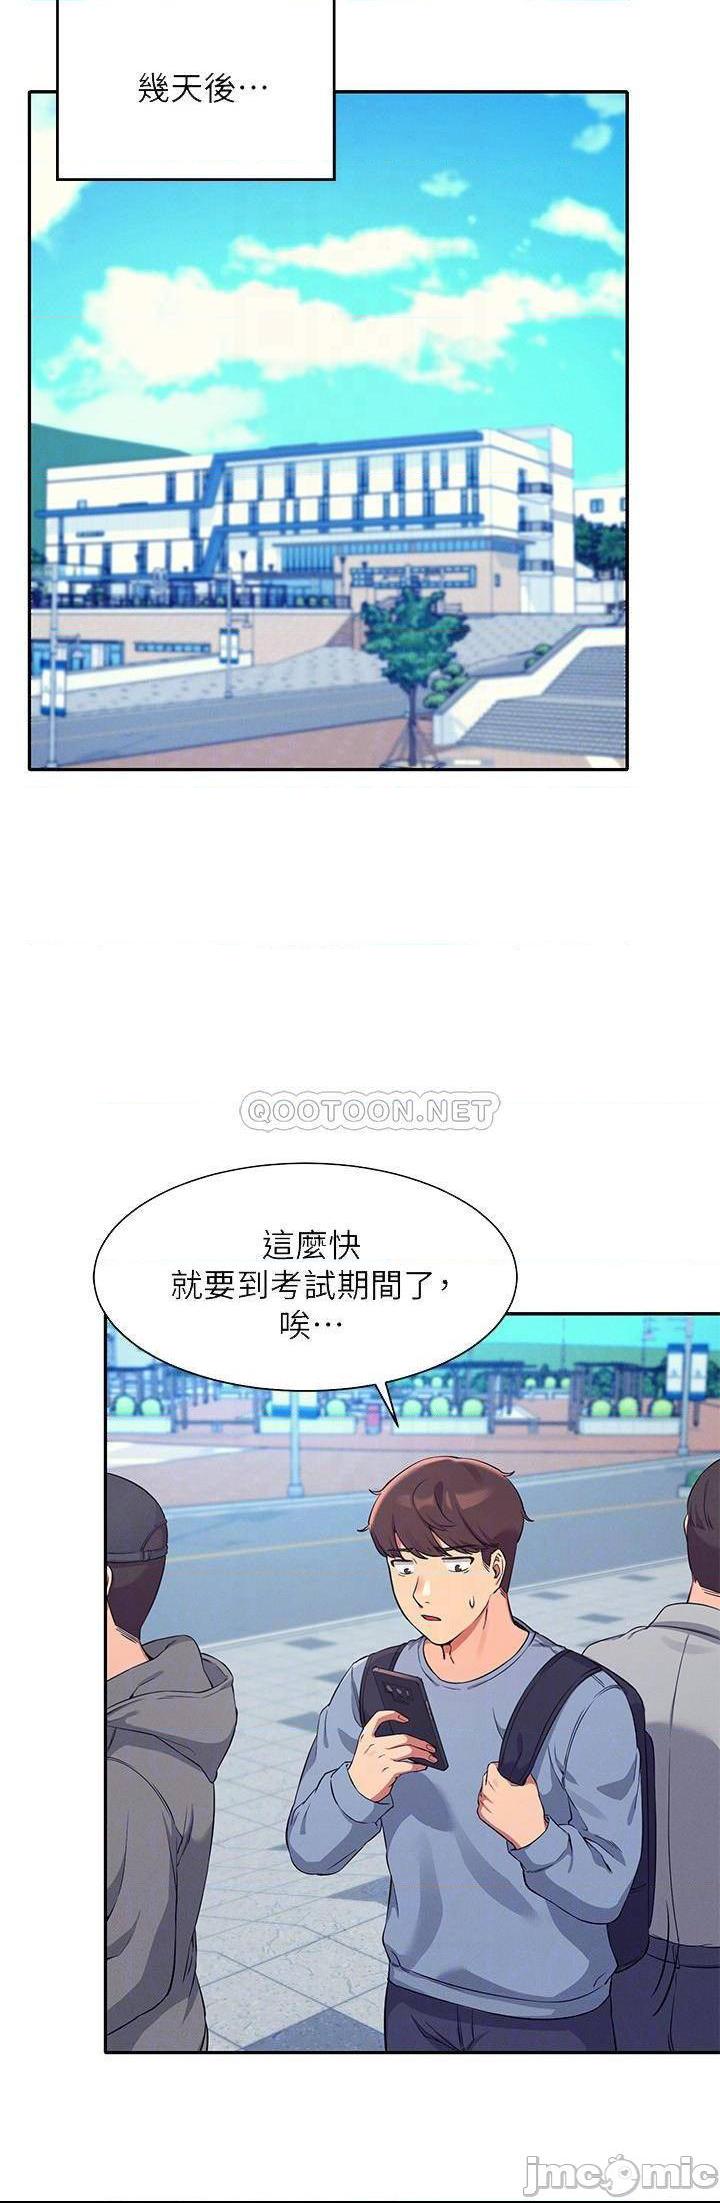 《谁说理组没正妹?》漫画 第15话 男厕裸露现场!